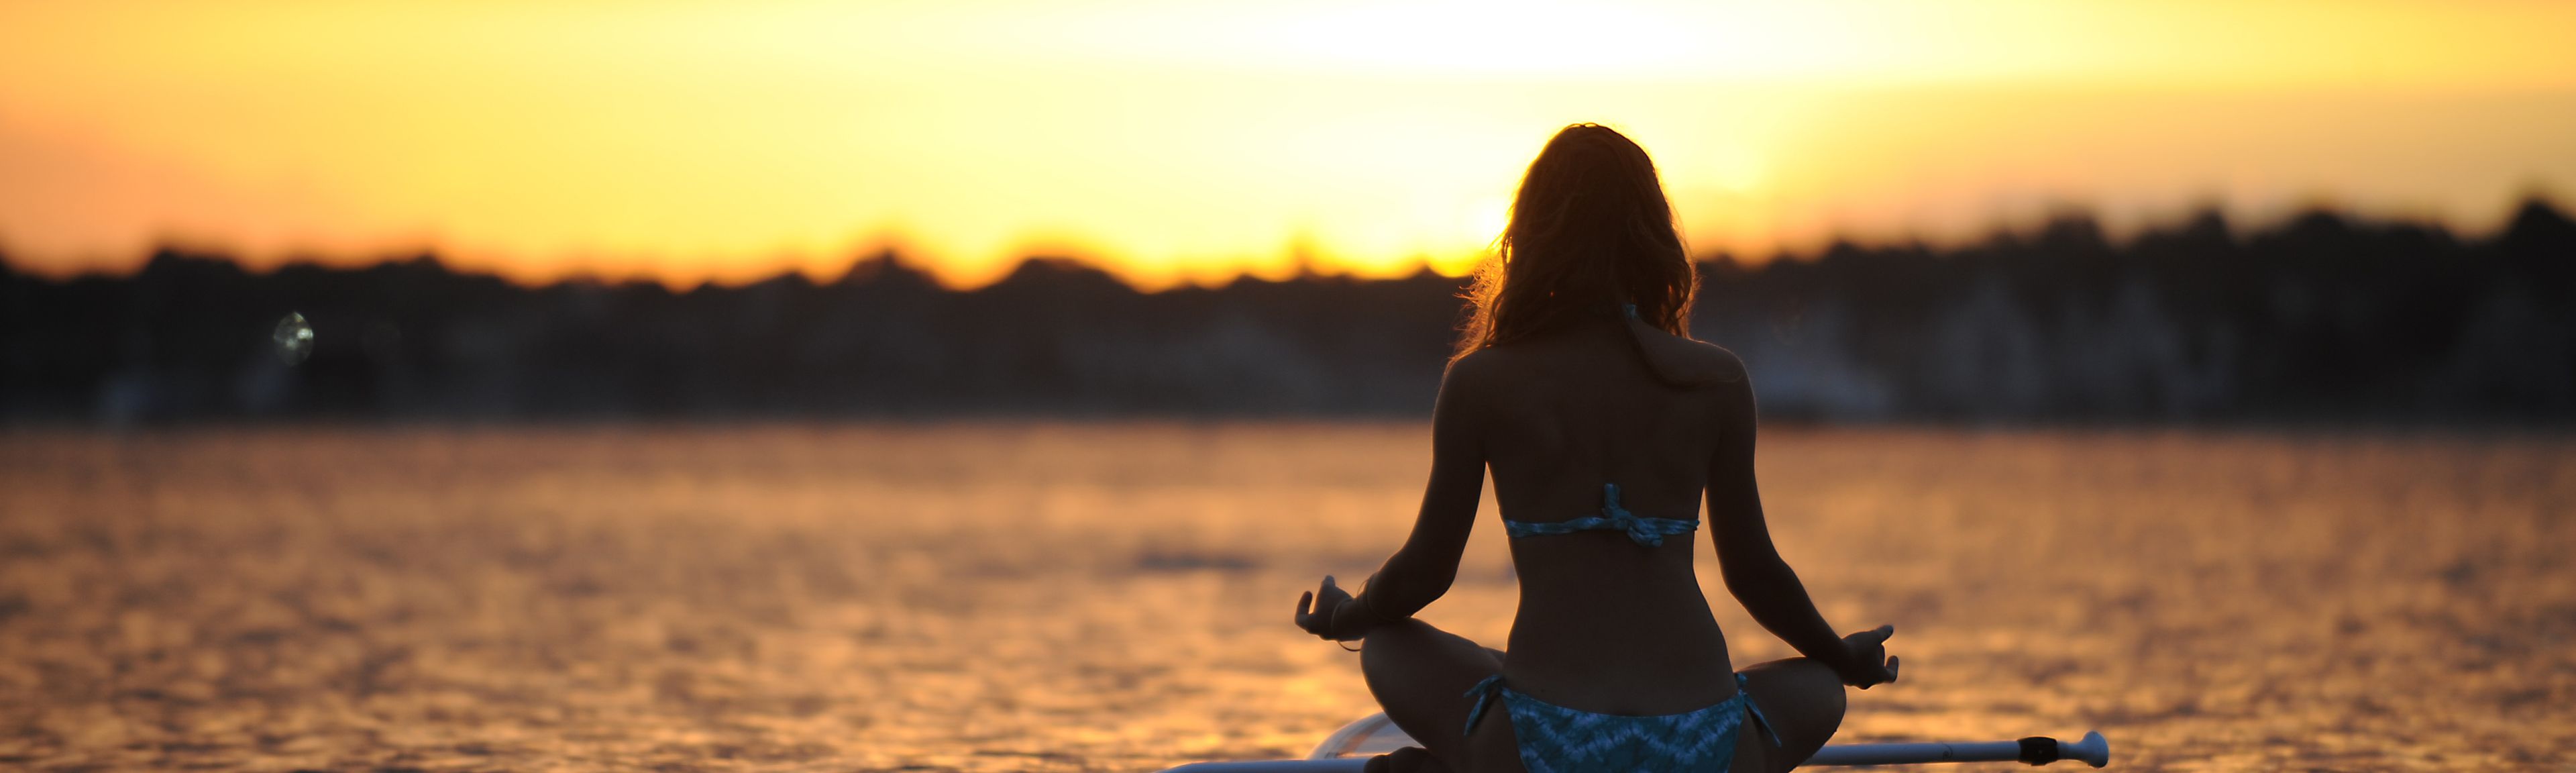 Frau sitzt im Lotussitz auf einem Surfbrett mitten auf einem See, während die Sonne untergeht.